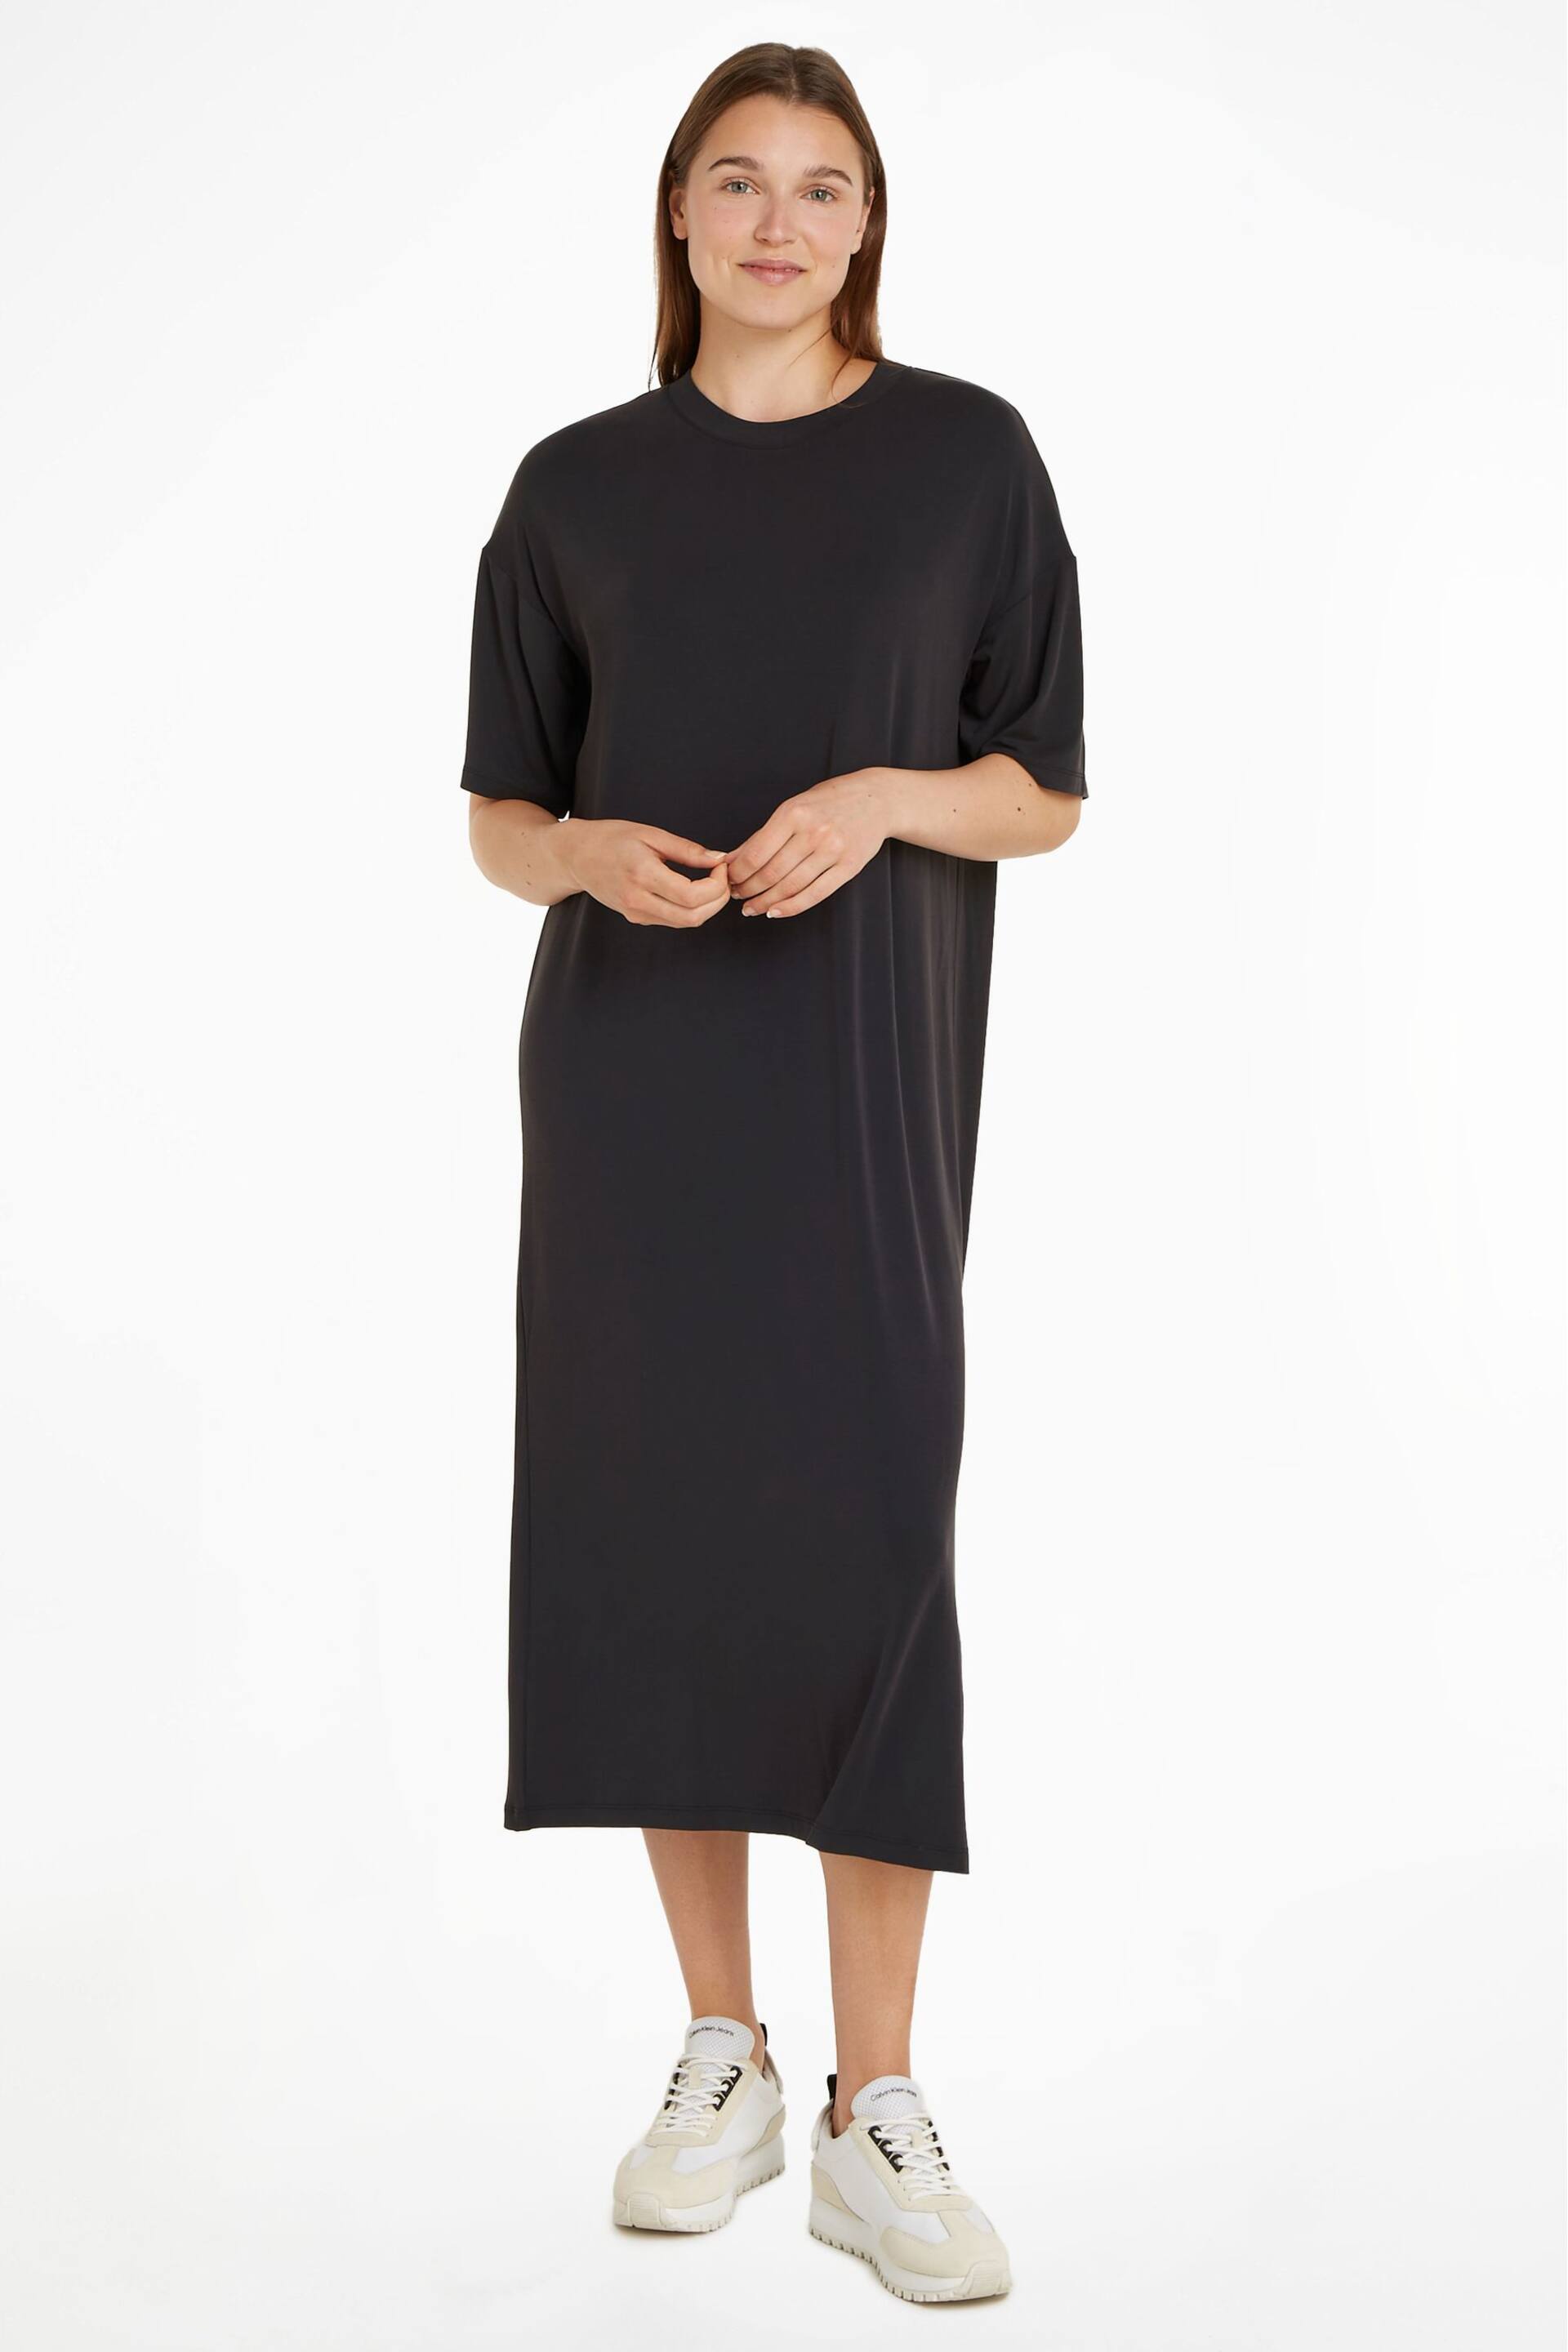 Calvin Klein Black T-Shirt Dress - Image 1 of 6